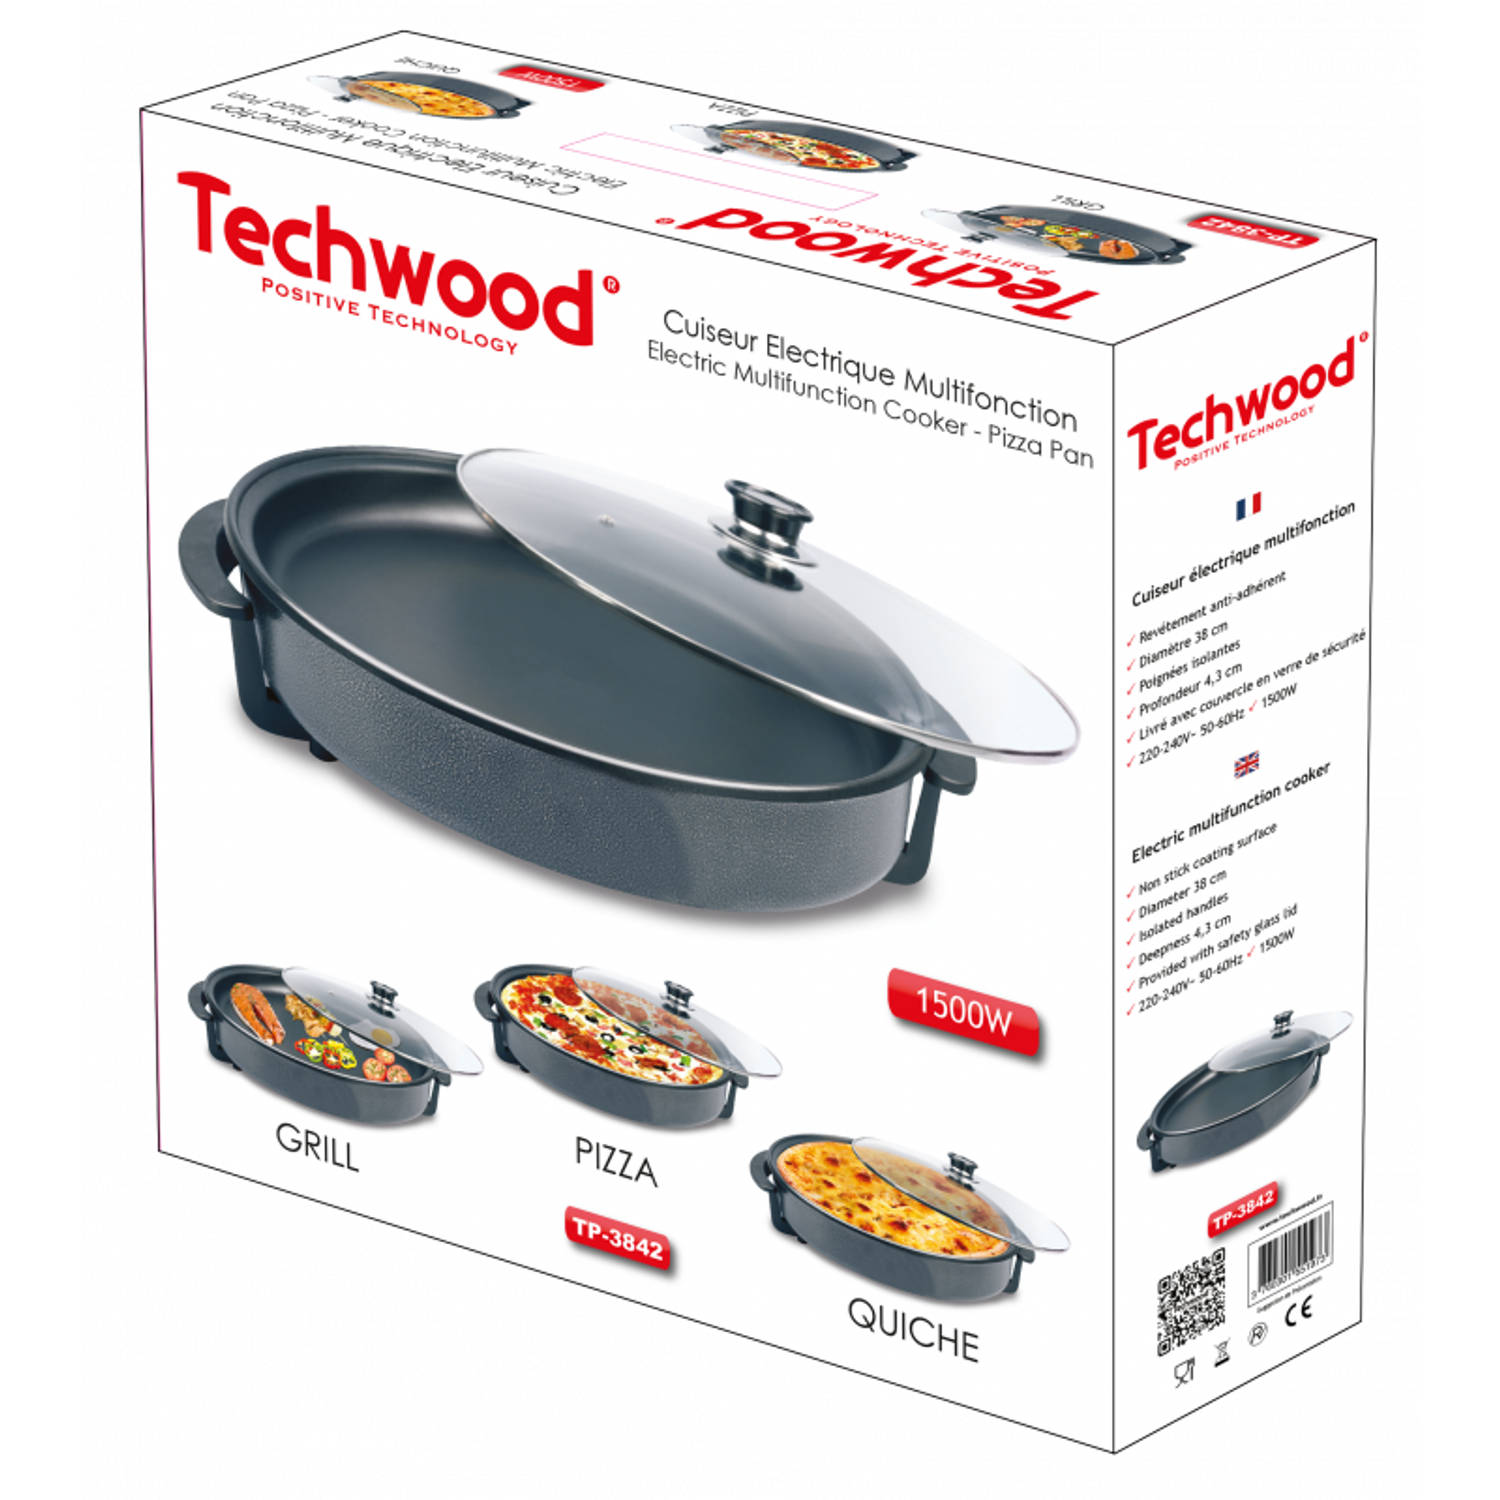 Techwood elektrische hapjespan tp3842- pizza pan - multifunctionele cooker - ø cm |